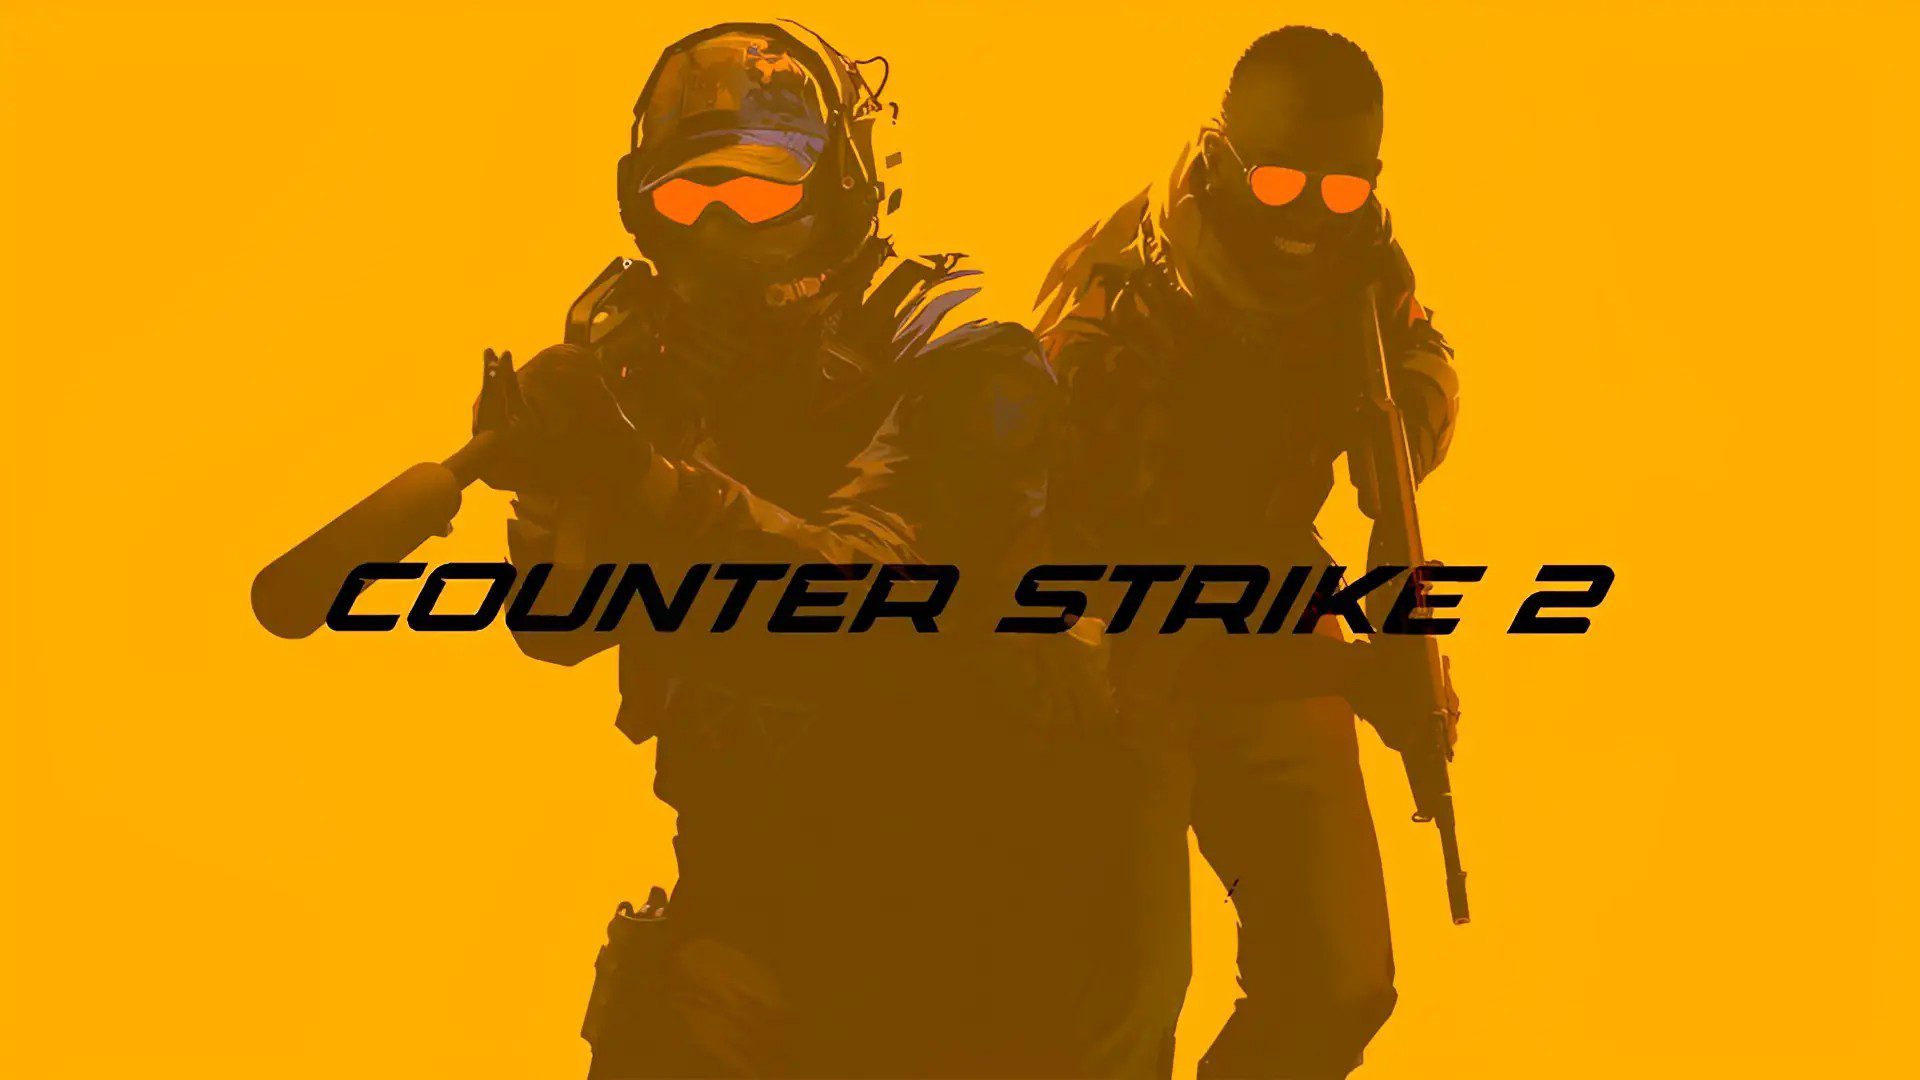 Posso jogar o beta de Counter-Strike 2 (CS2)? Como ver se você tem acesso